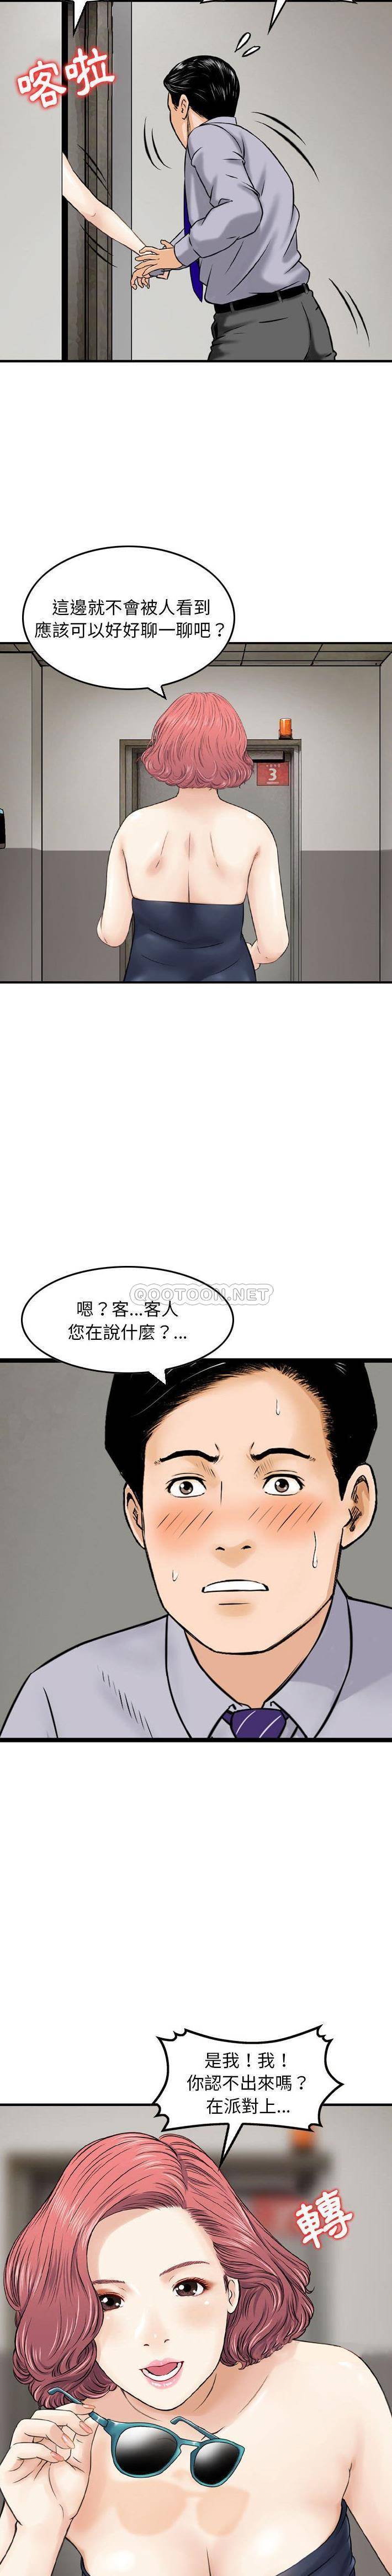 韩国污漫画 金錢的魅力 第12话 11